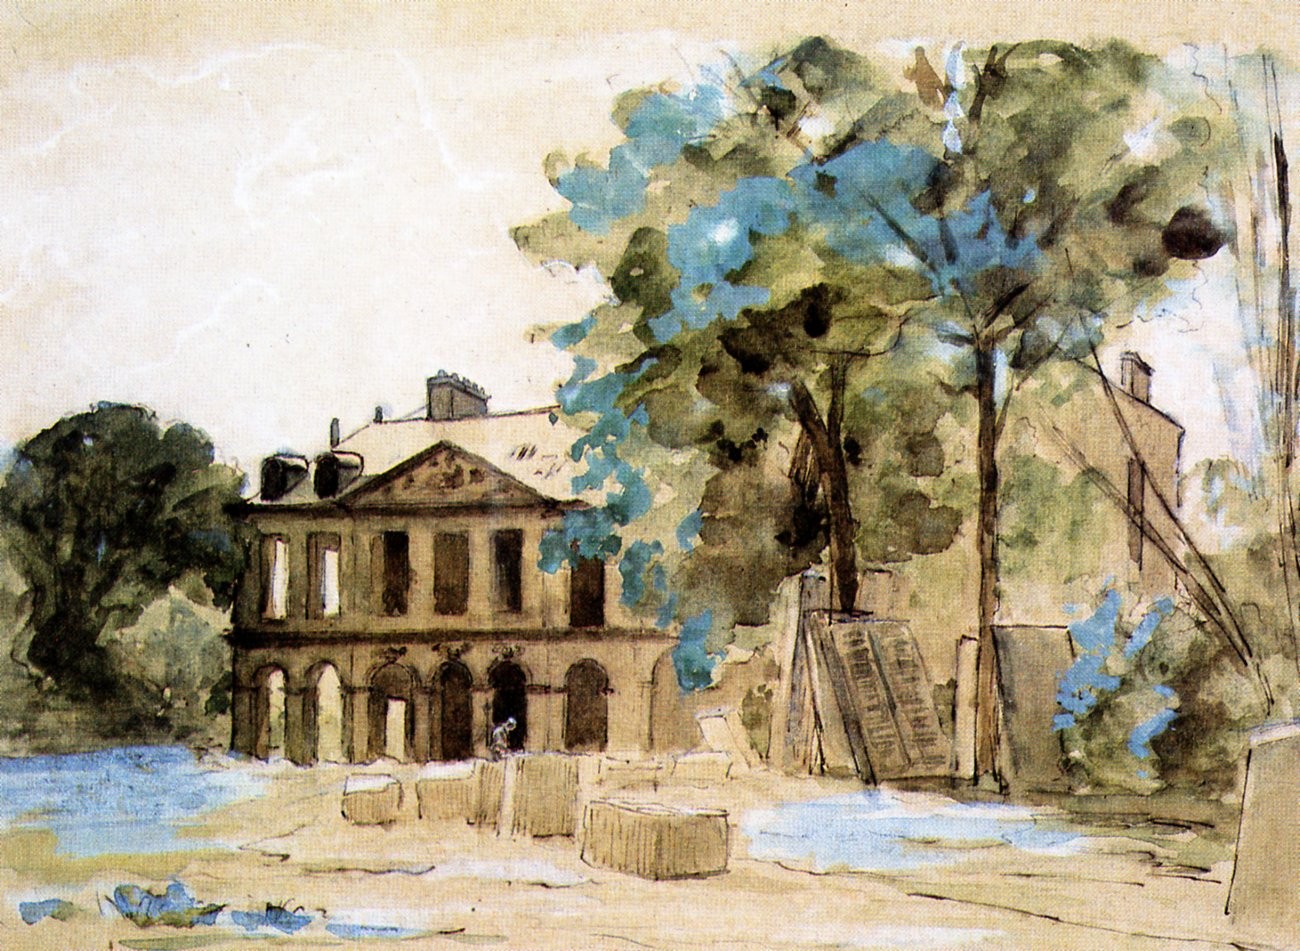 Château de Puteaux - Tableau - Auguste Durst - vers 1880.jpg